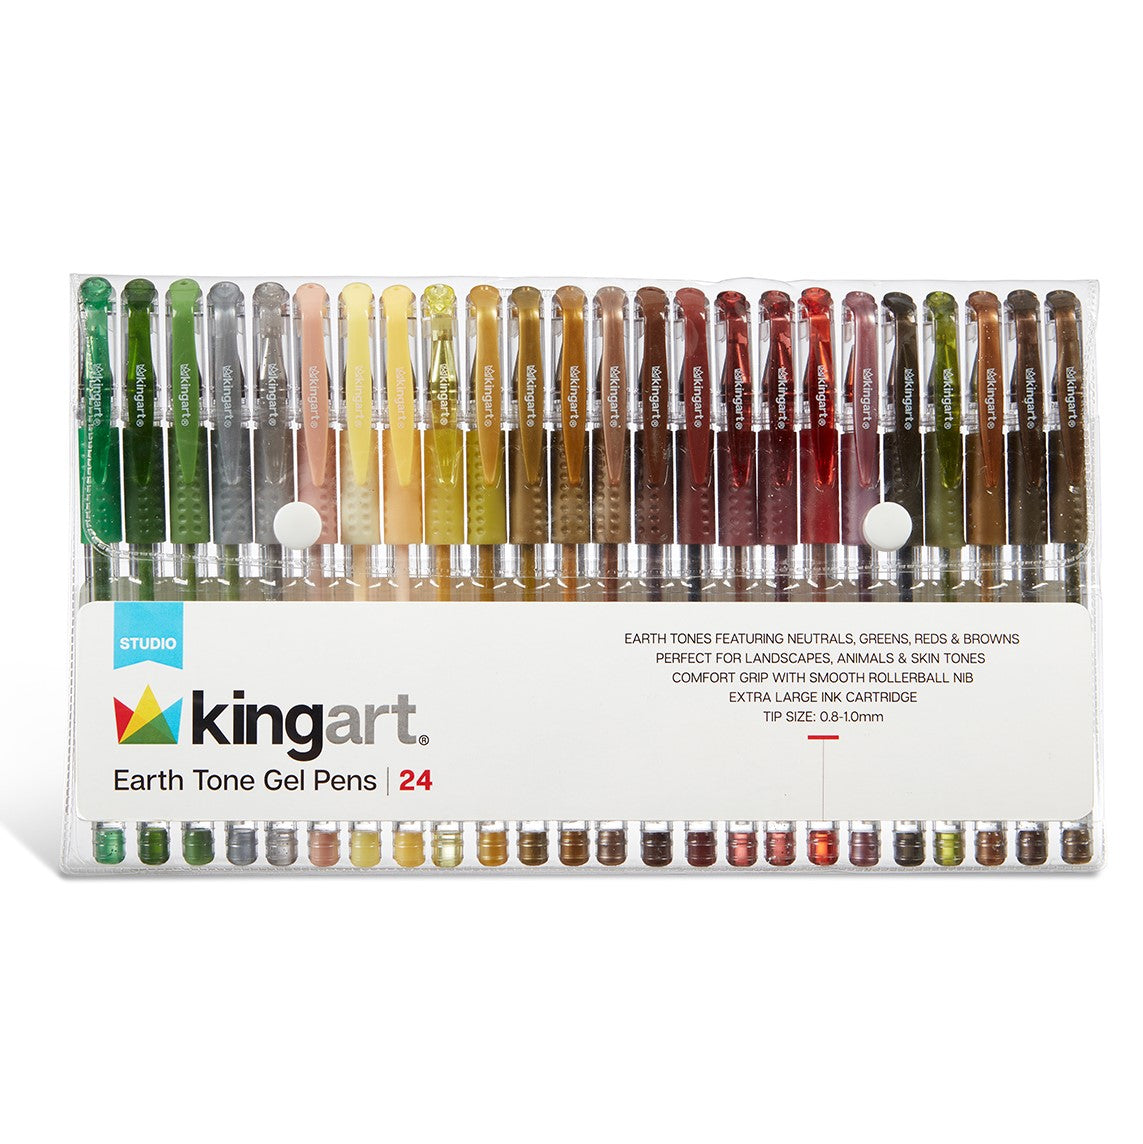 Gel pens Set 12/24 100 Colored Gel Pen Tip Glitter Gel pens with Canvas Bag